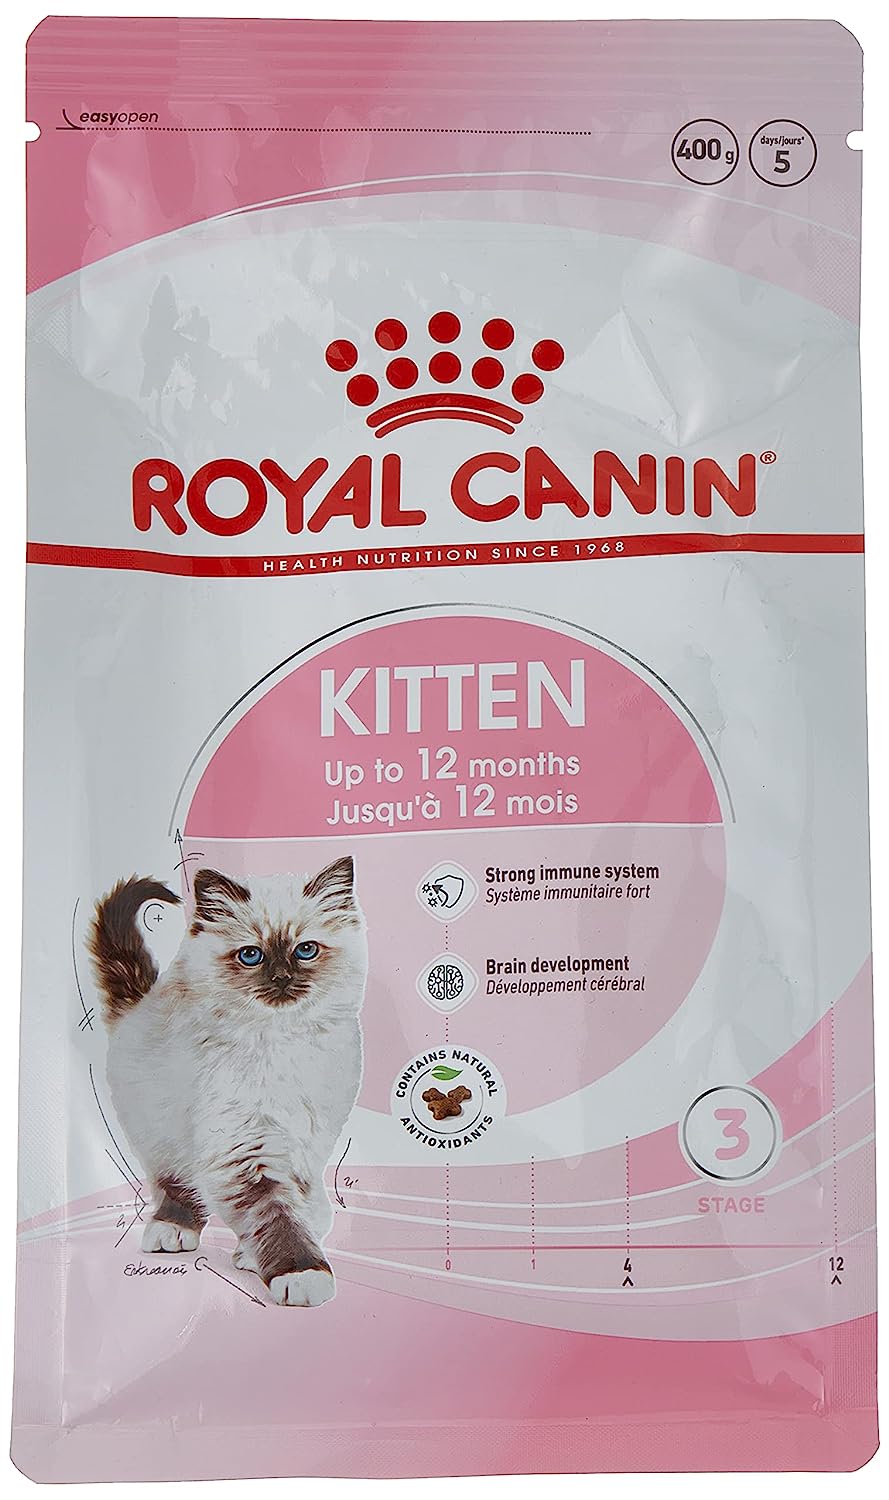 Royal canin Kitten